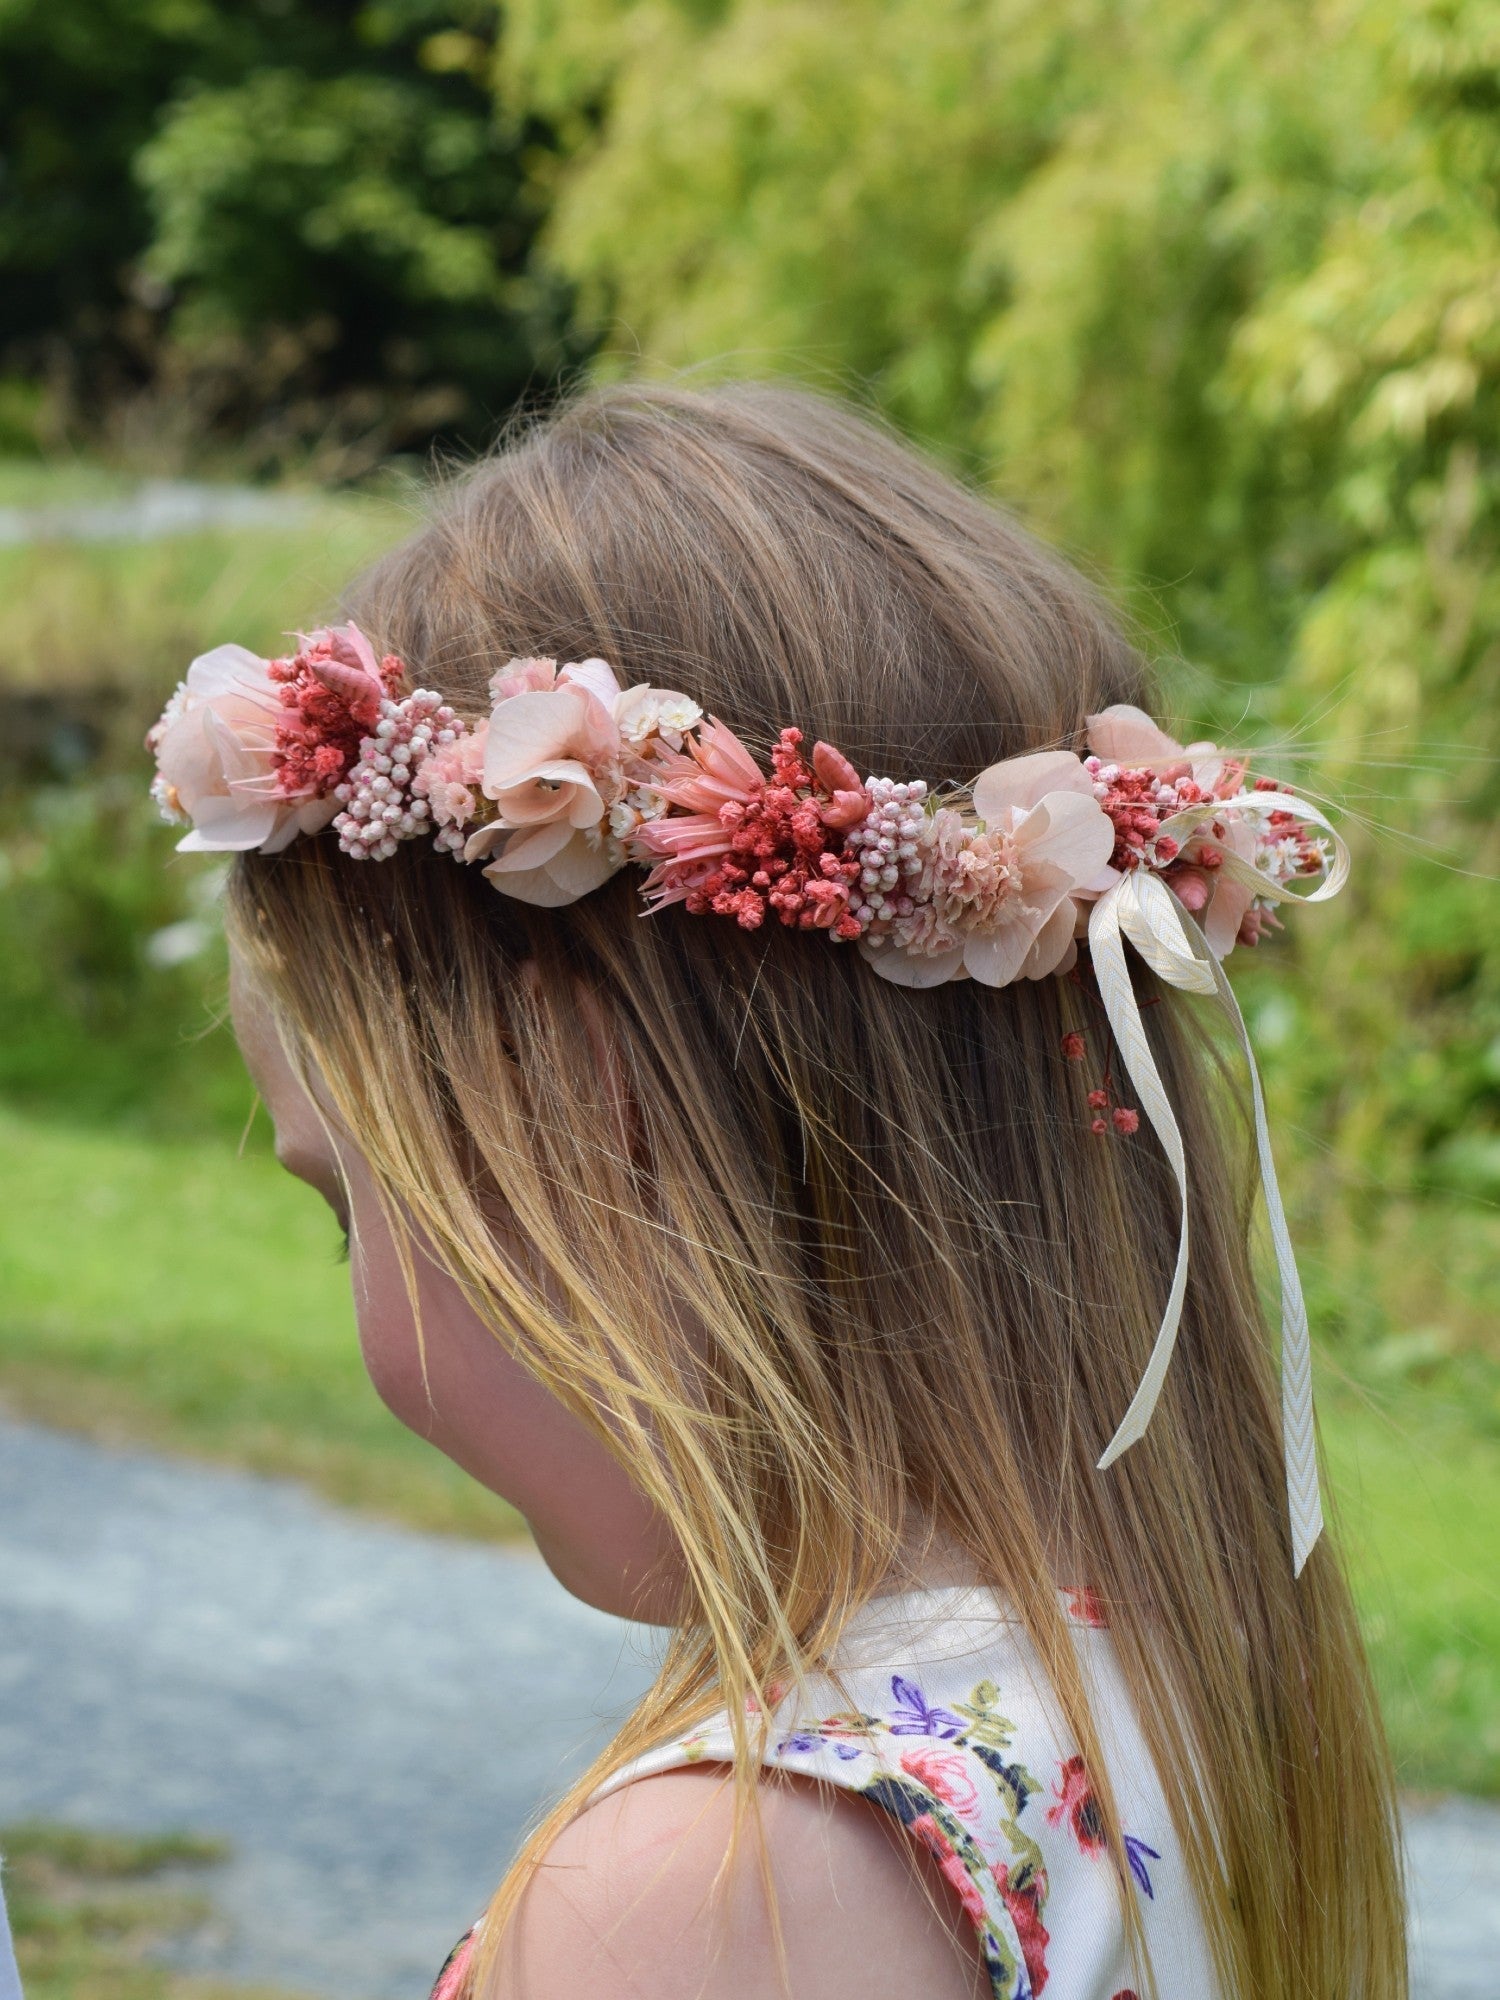 Rosie - Crown of Flowers children